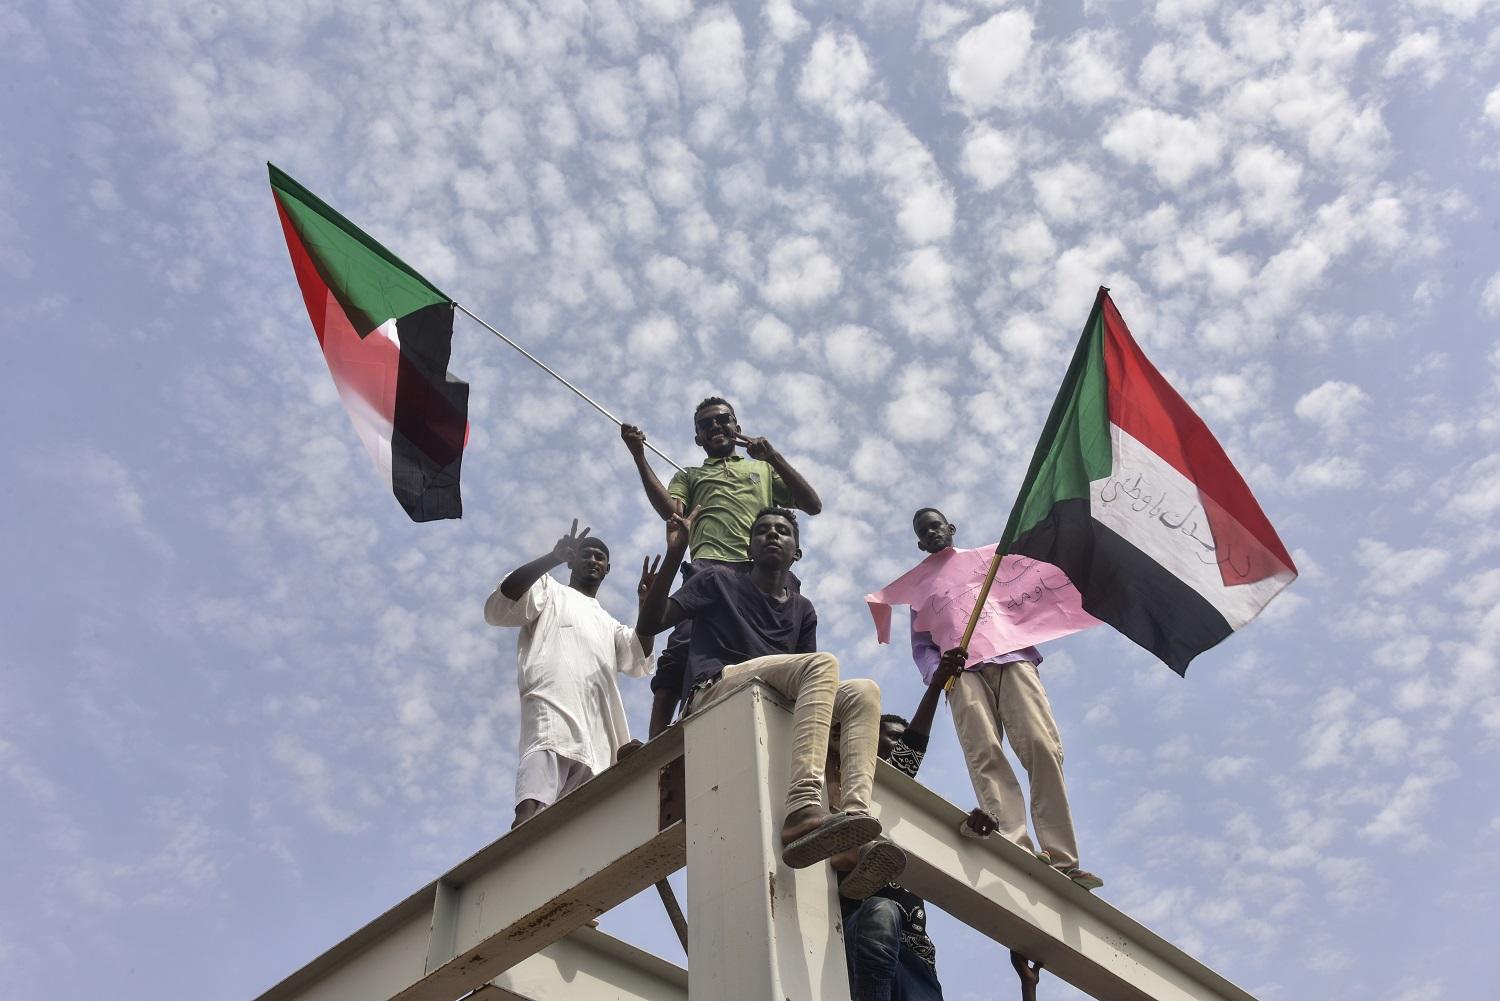 سودانيون يغادرون إلى الخرطوم للاحتفال بالانتقال إلى الحكم المدني. 17 آب/أغسطس 2019. (أ ف ب)